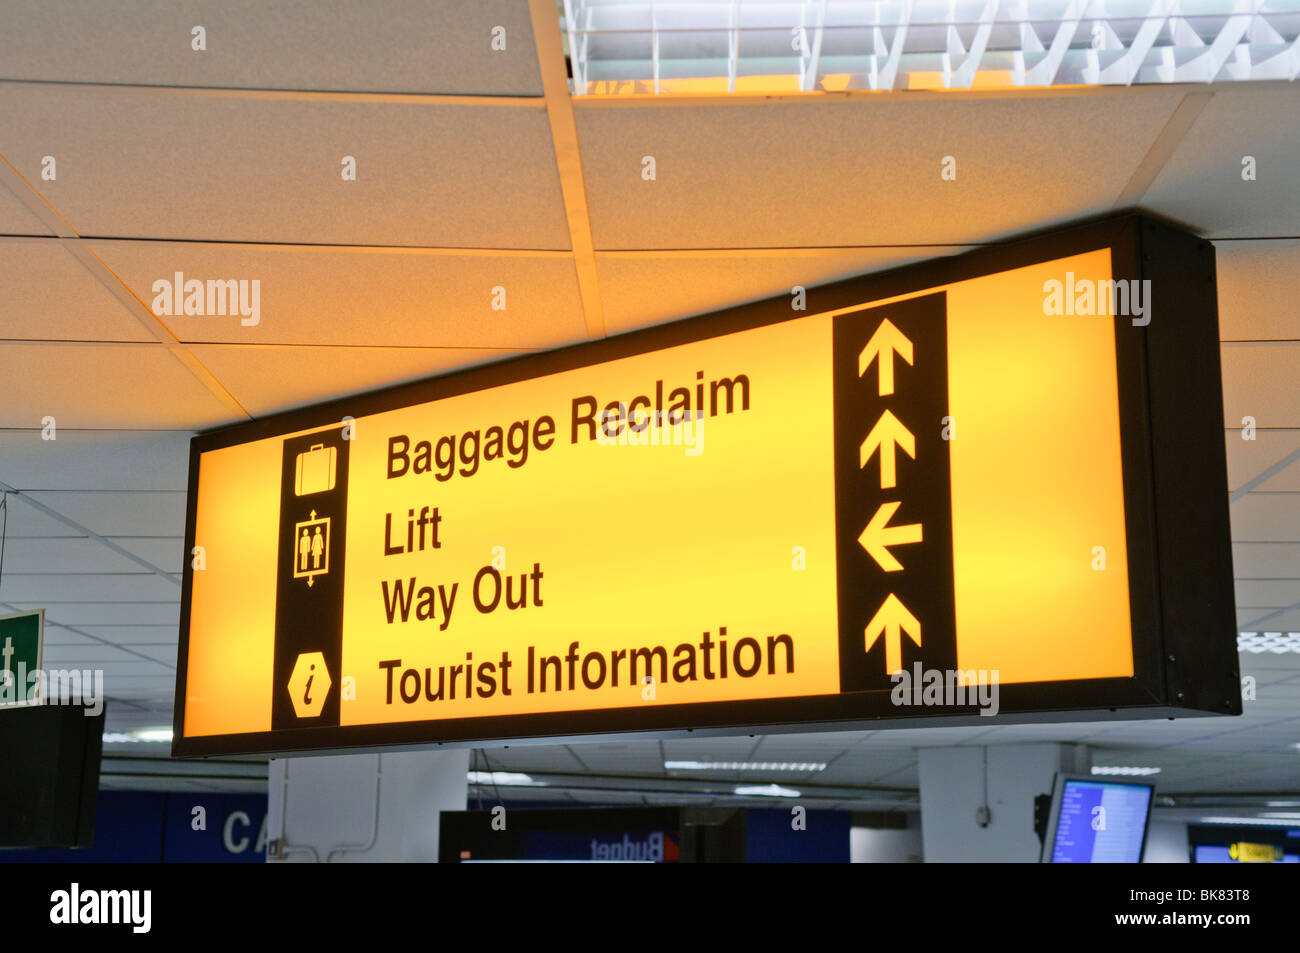 Aeroporto segno dare indicazioni al ritiro bagagli, ascensore, vie di uscita e informazioni turistiche Foto Stock